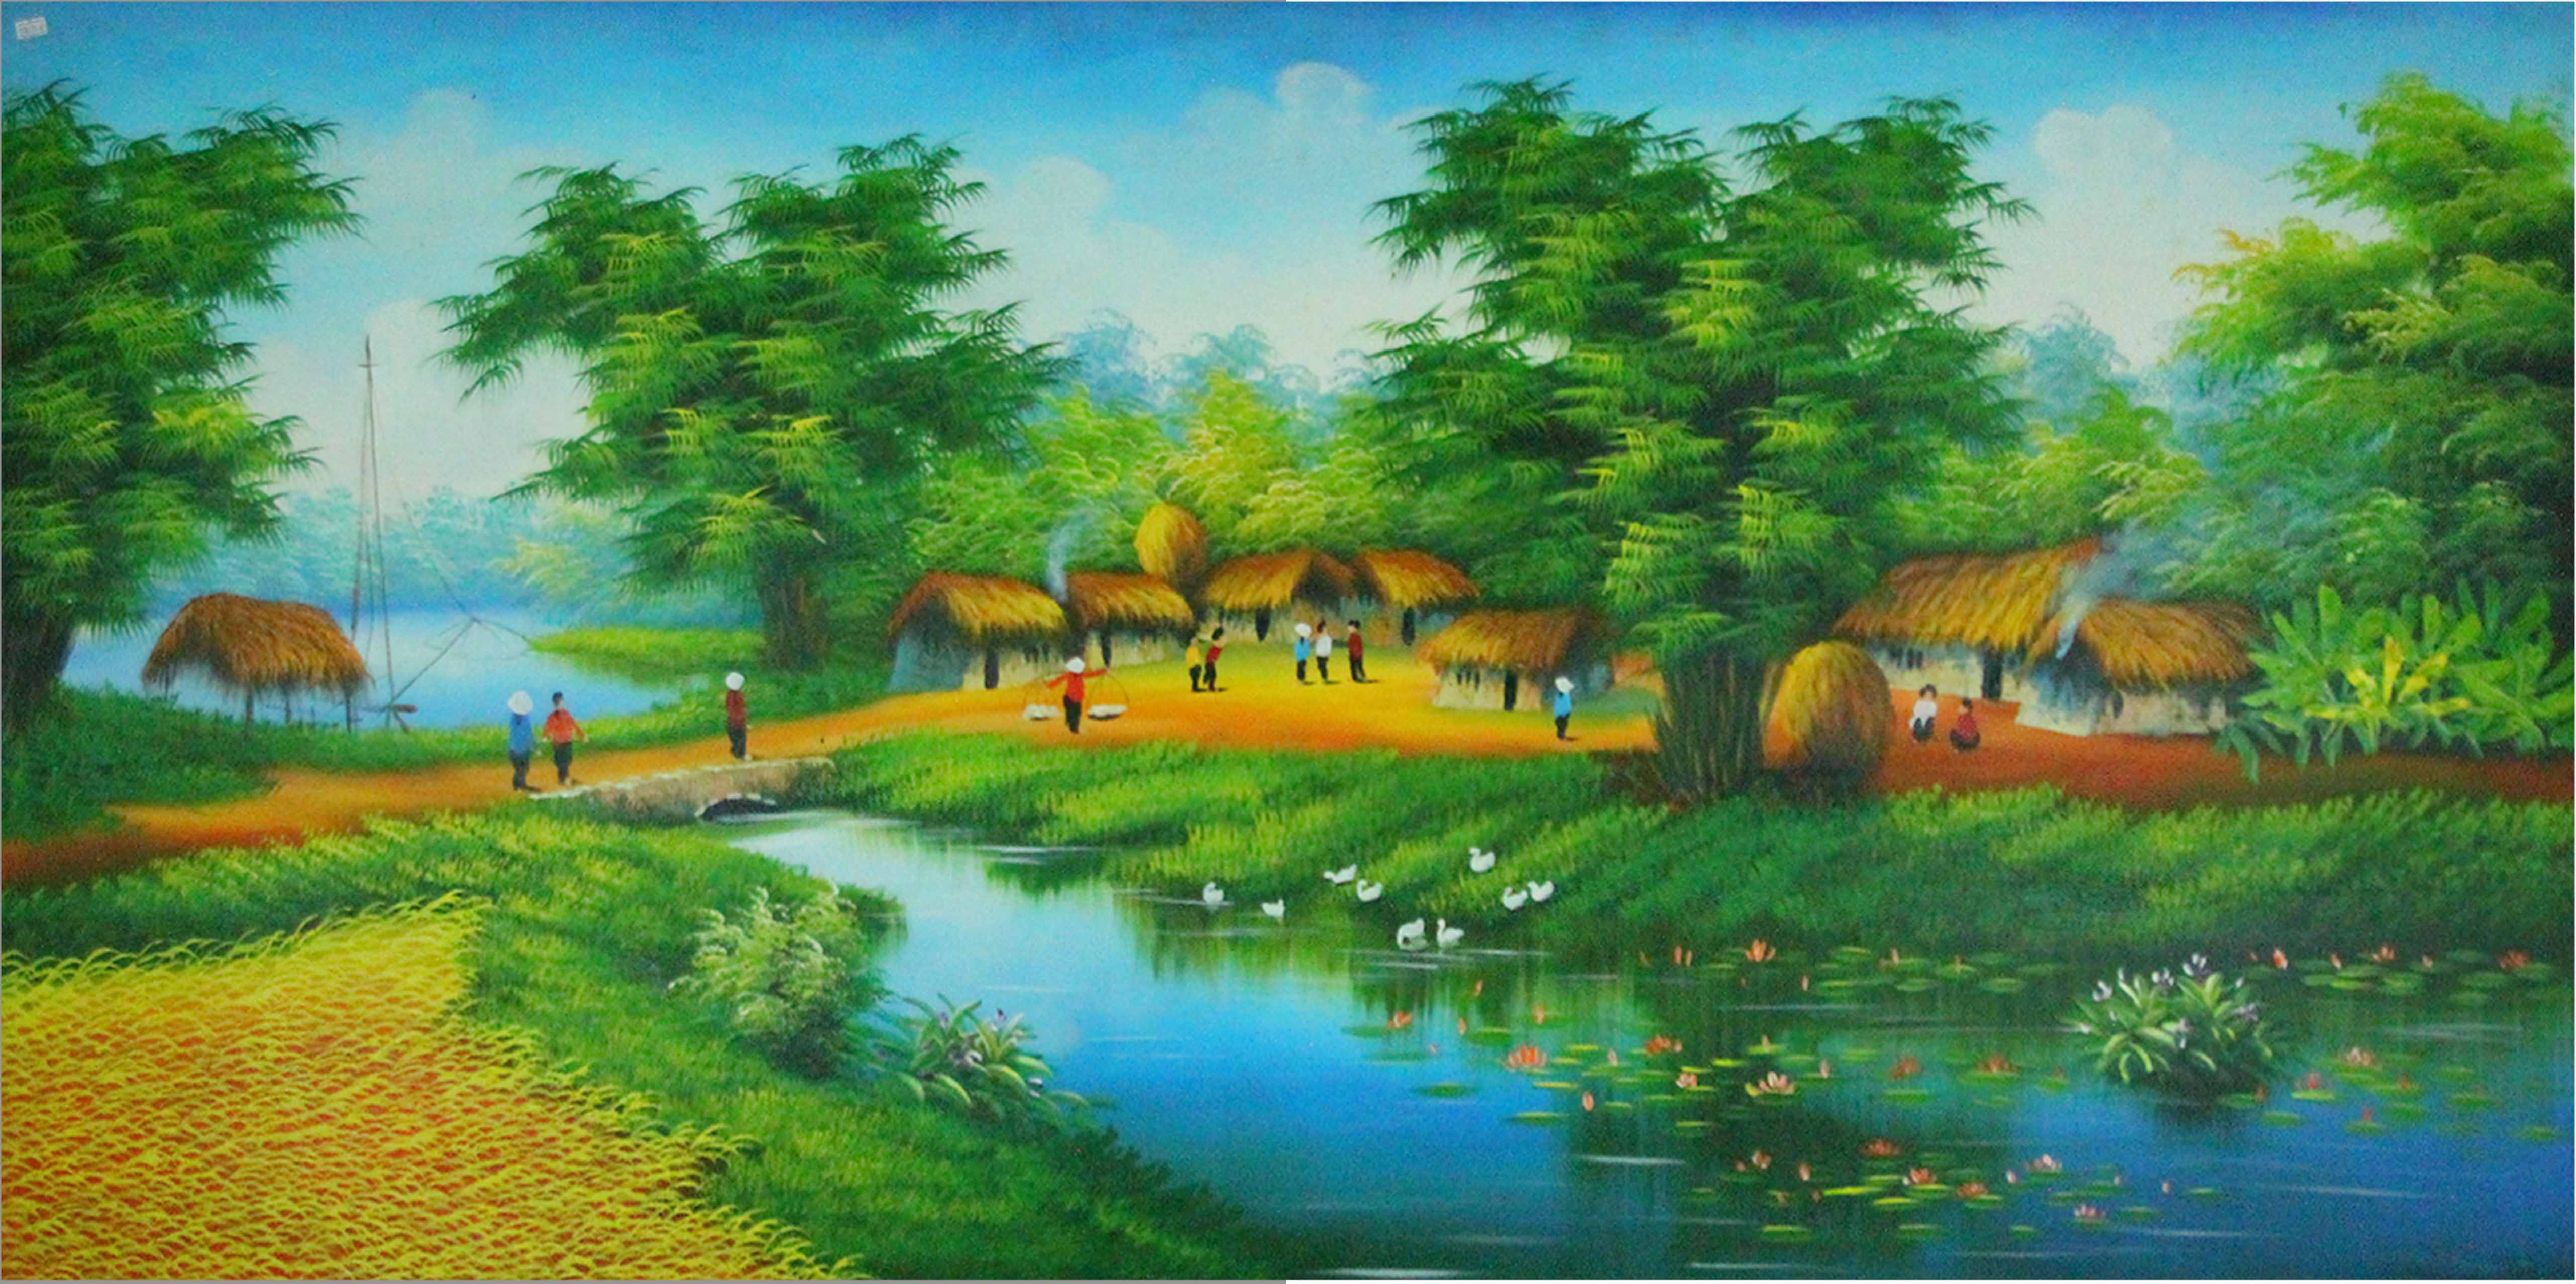 Tranh sơn dầu làng quê Việt Nam - TSD49LHAR 6